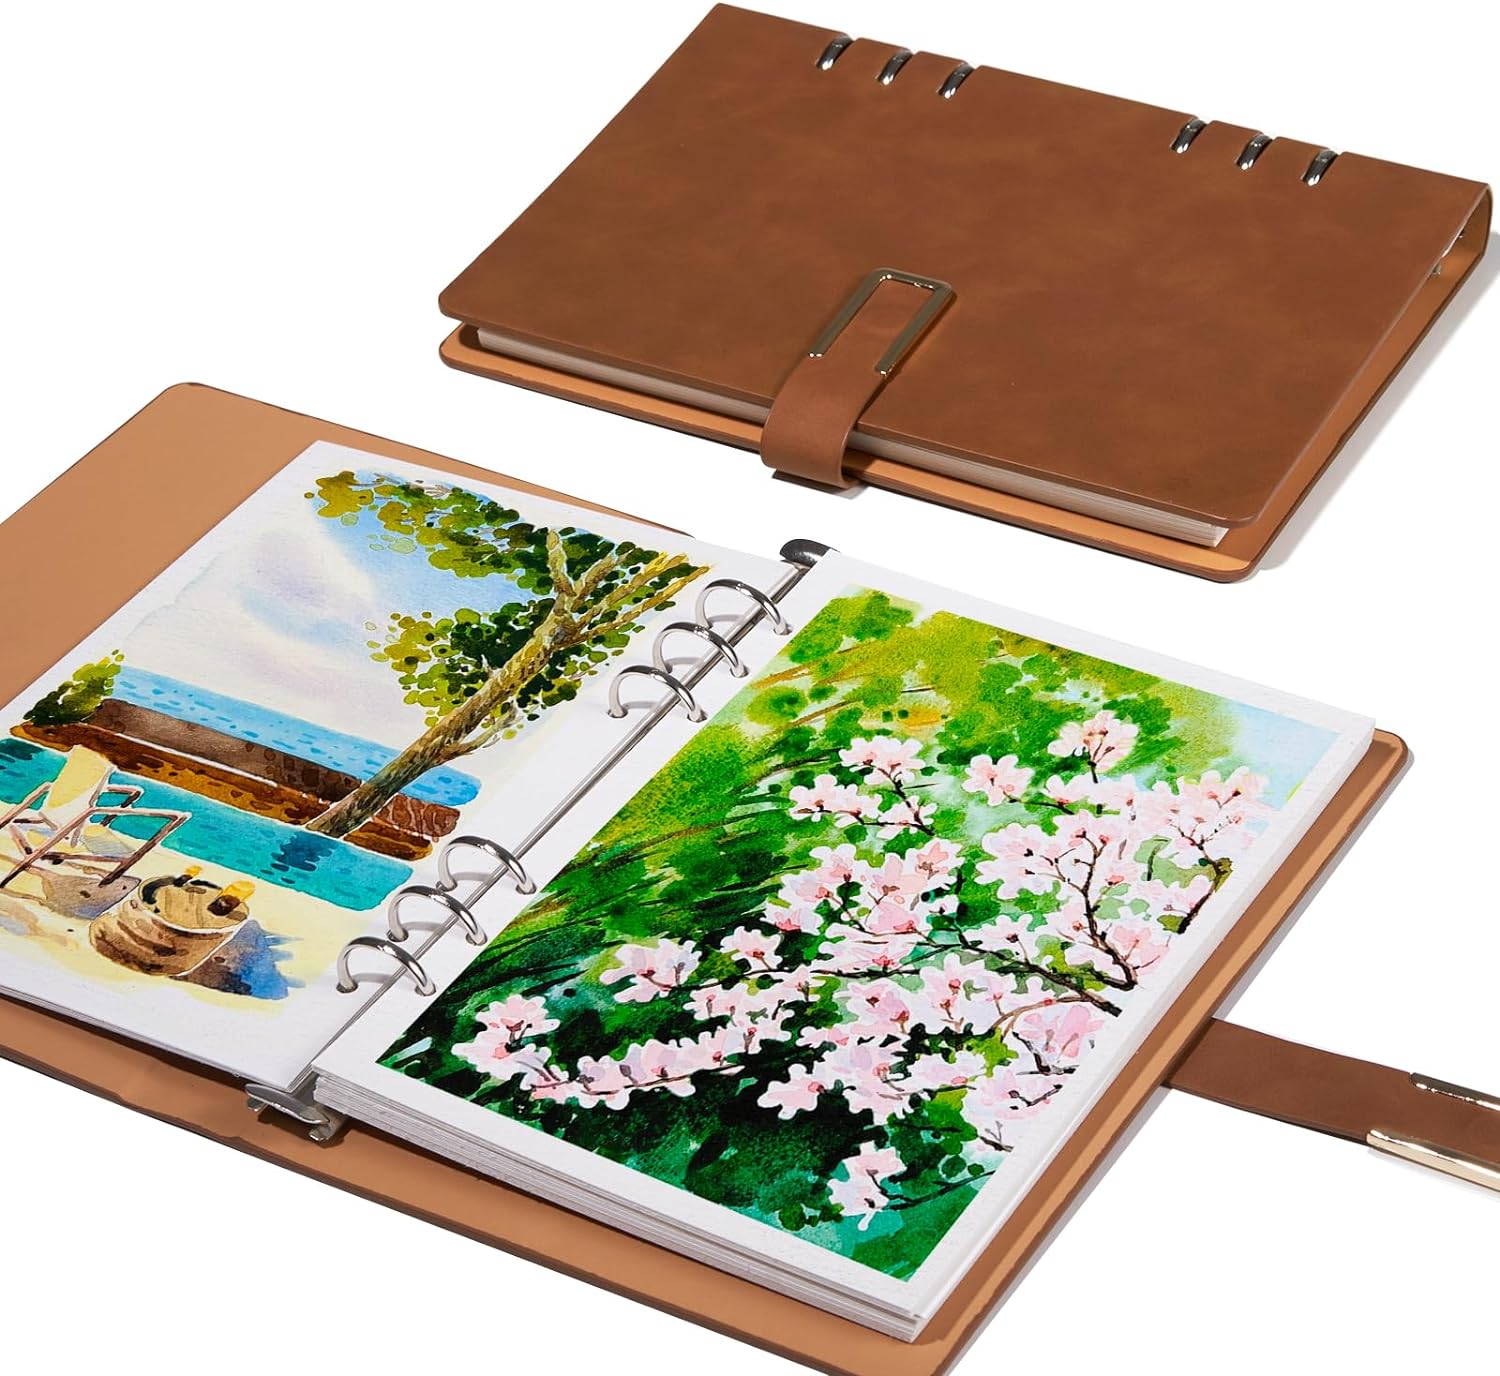 Lightwish Aquarell-Tagebuch/Skizzenbuch, 100 % Baumwolle, säurefrei, 300 g/m², heißgepresstes Aquarellpapier, 20 Blatt, 23,5 x 16 cm